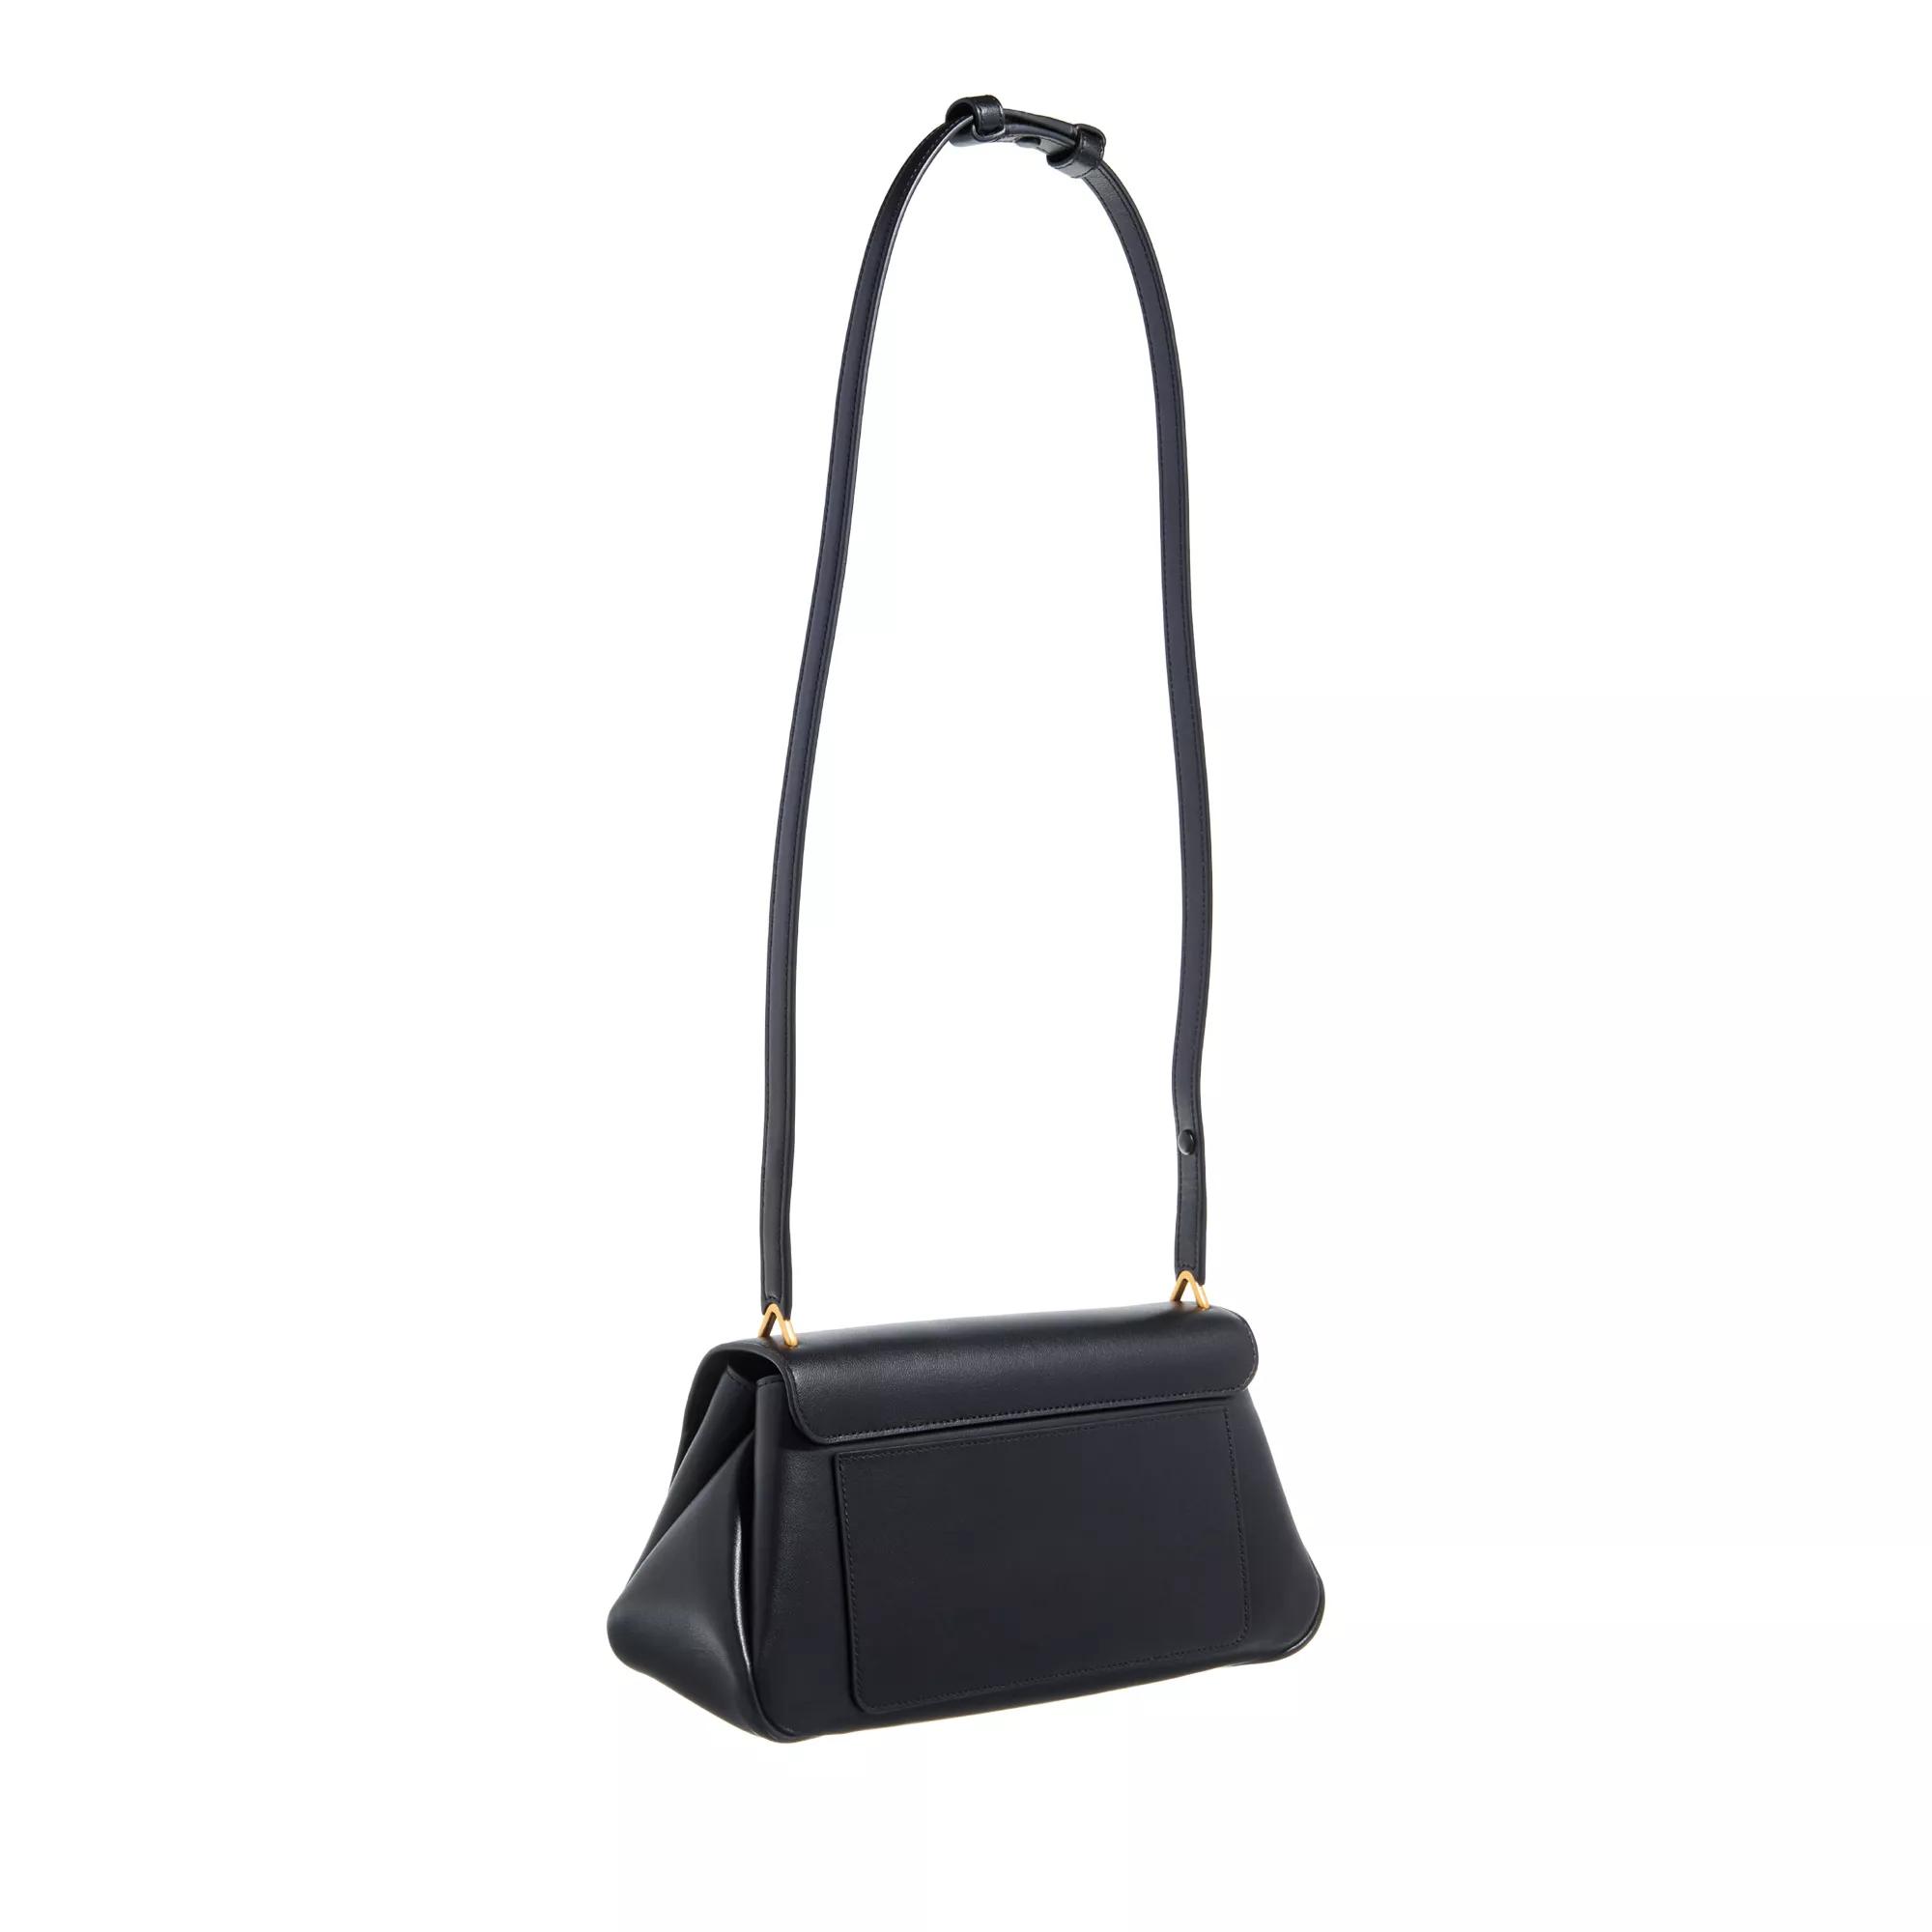 Kate spade new york Pochettes Grace Smooth Leather Shoulder Bag in zwart